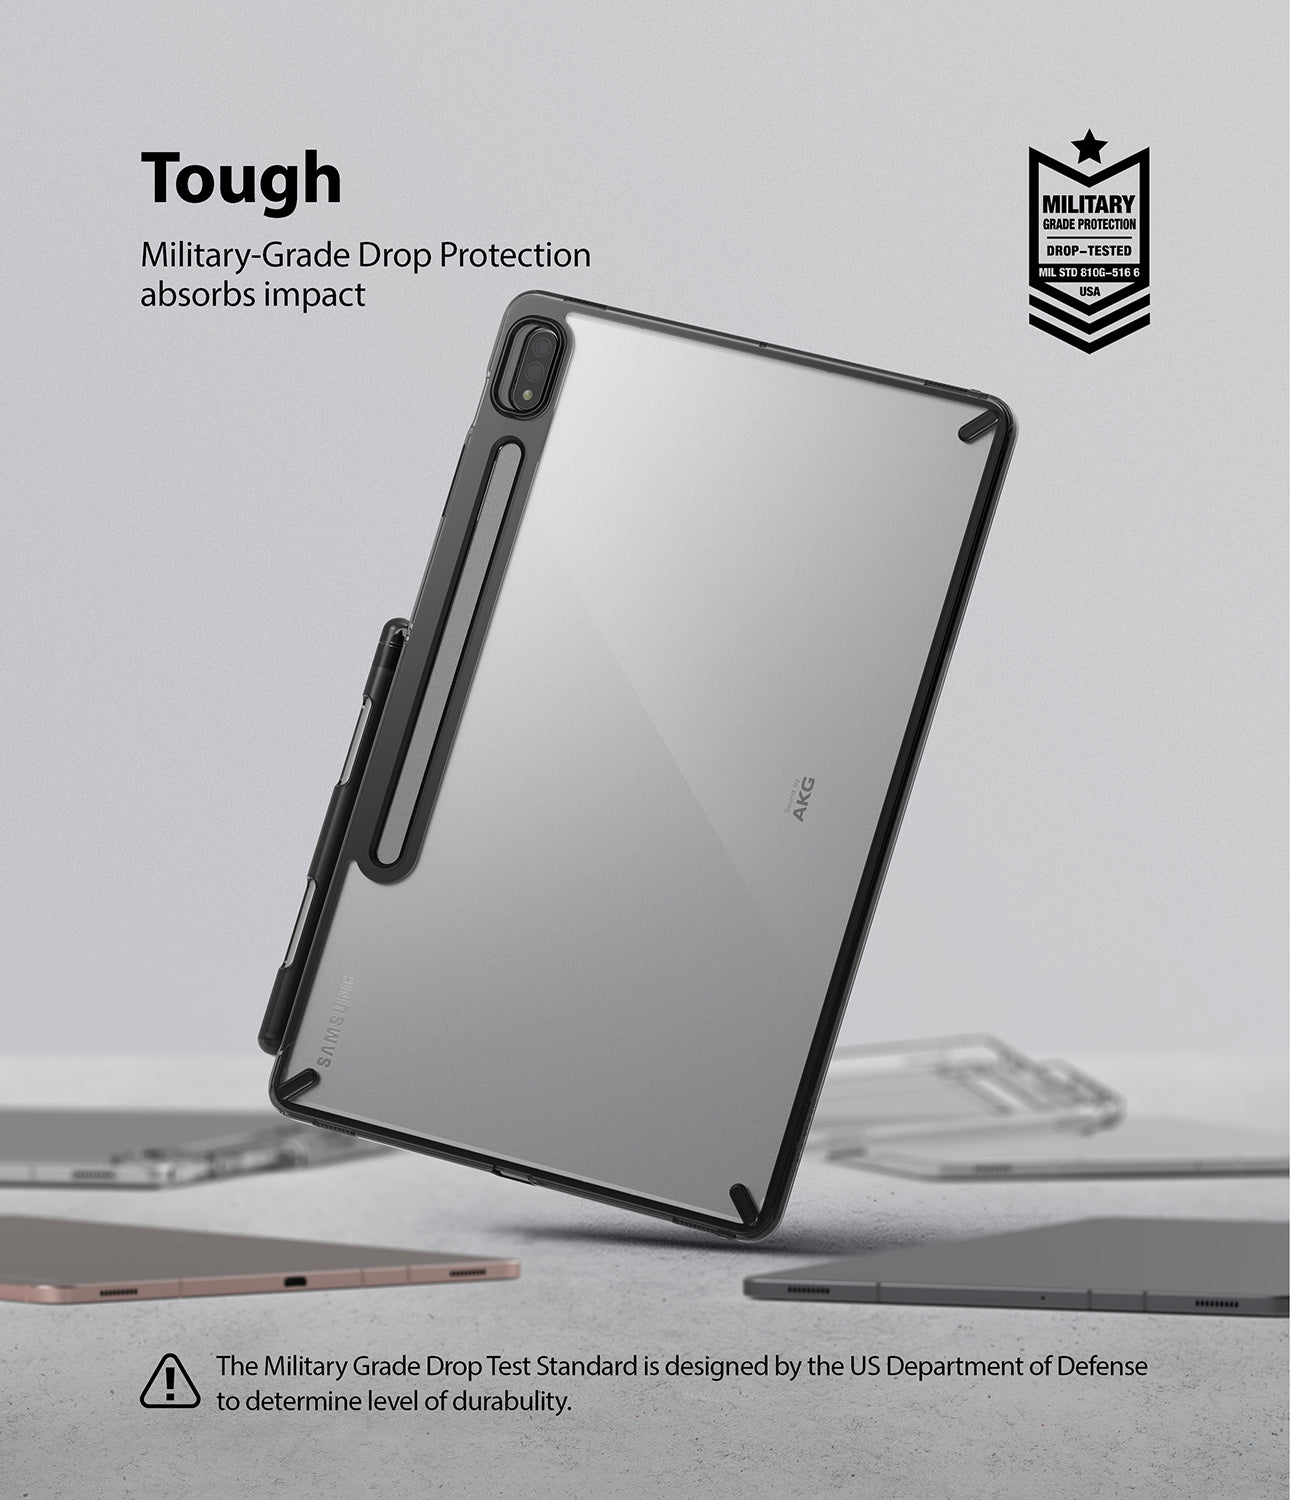 Samsung Galaxy Tab S8 Fusion Case Clear